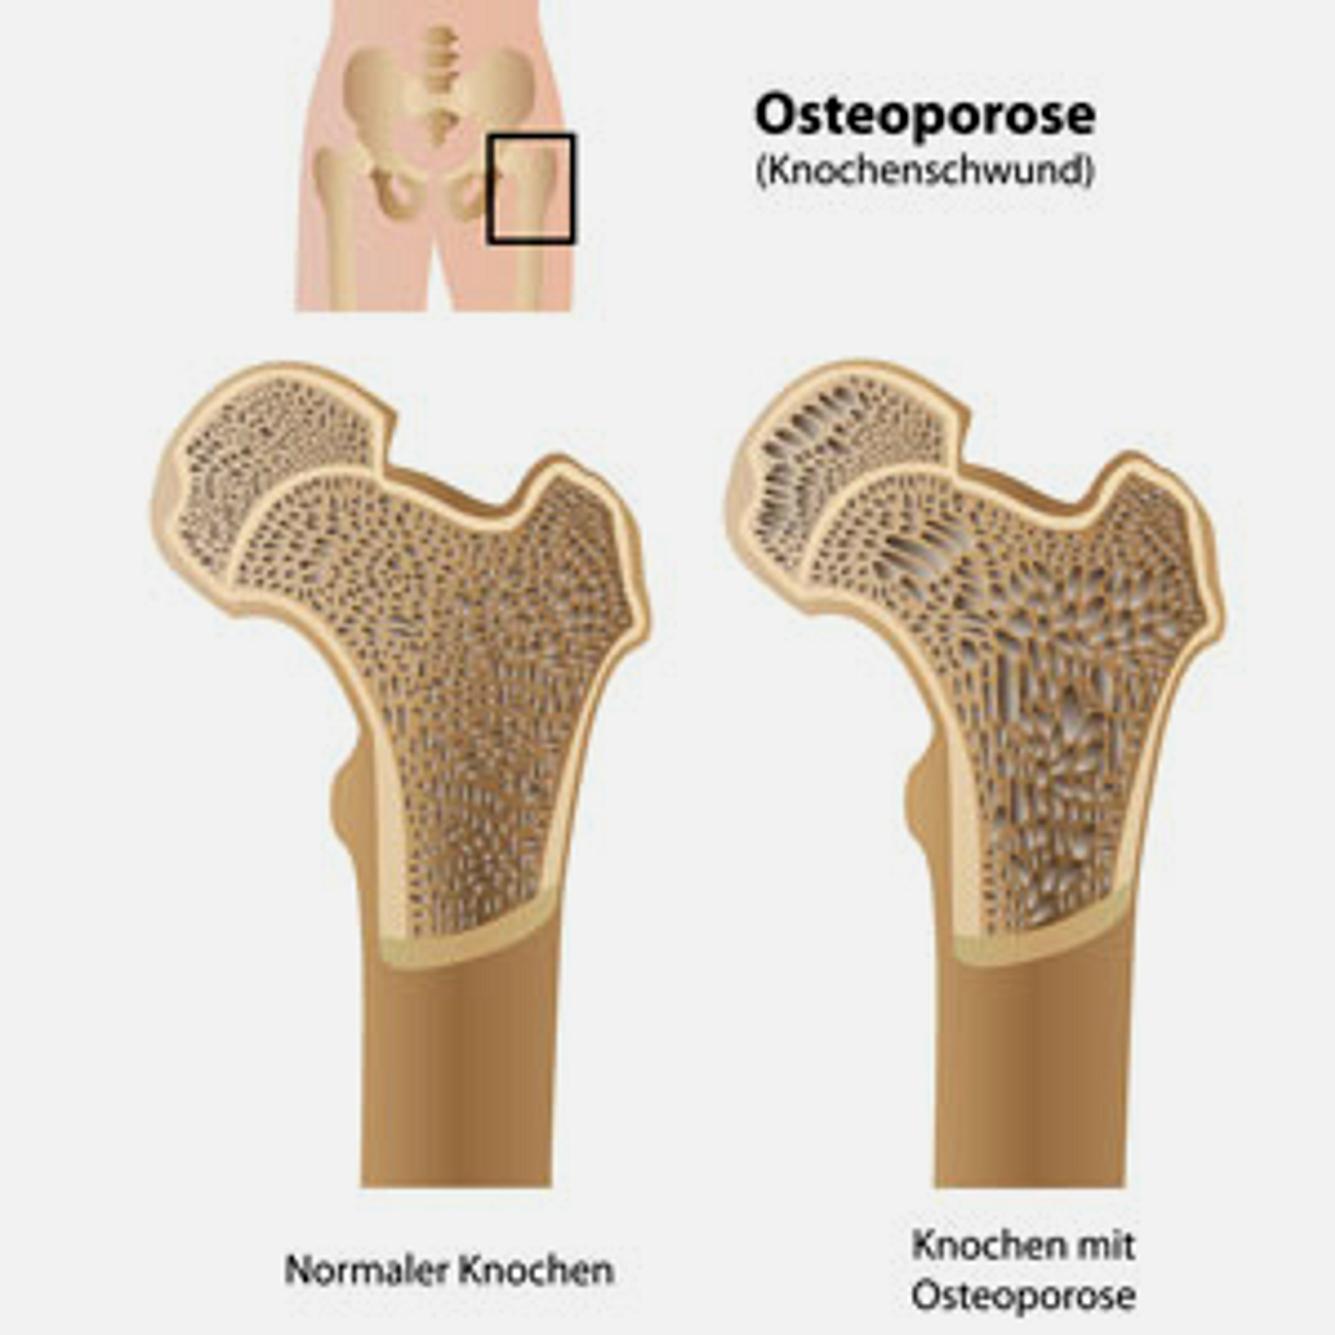 Bei Osteoporose nimmt die Knochendichte ab